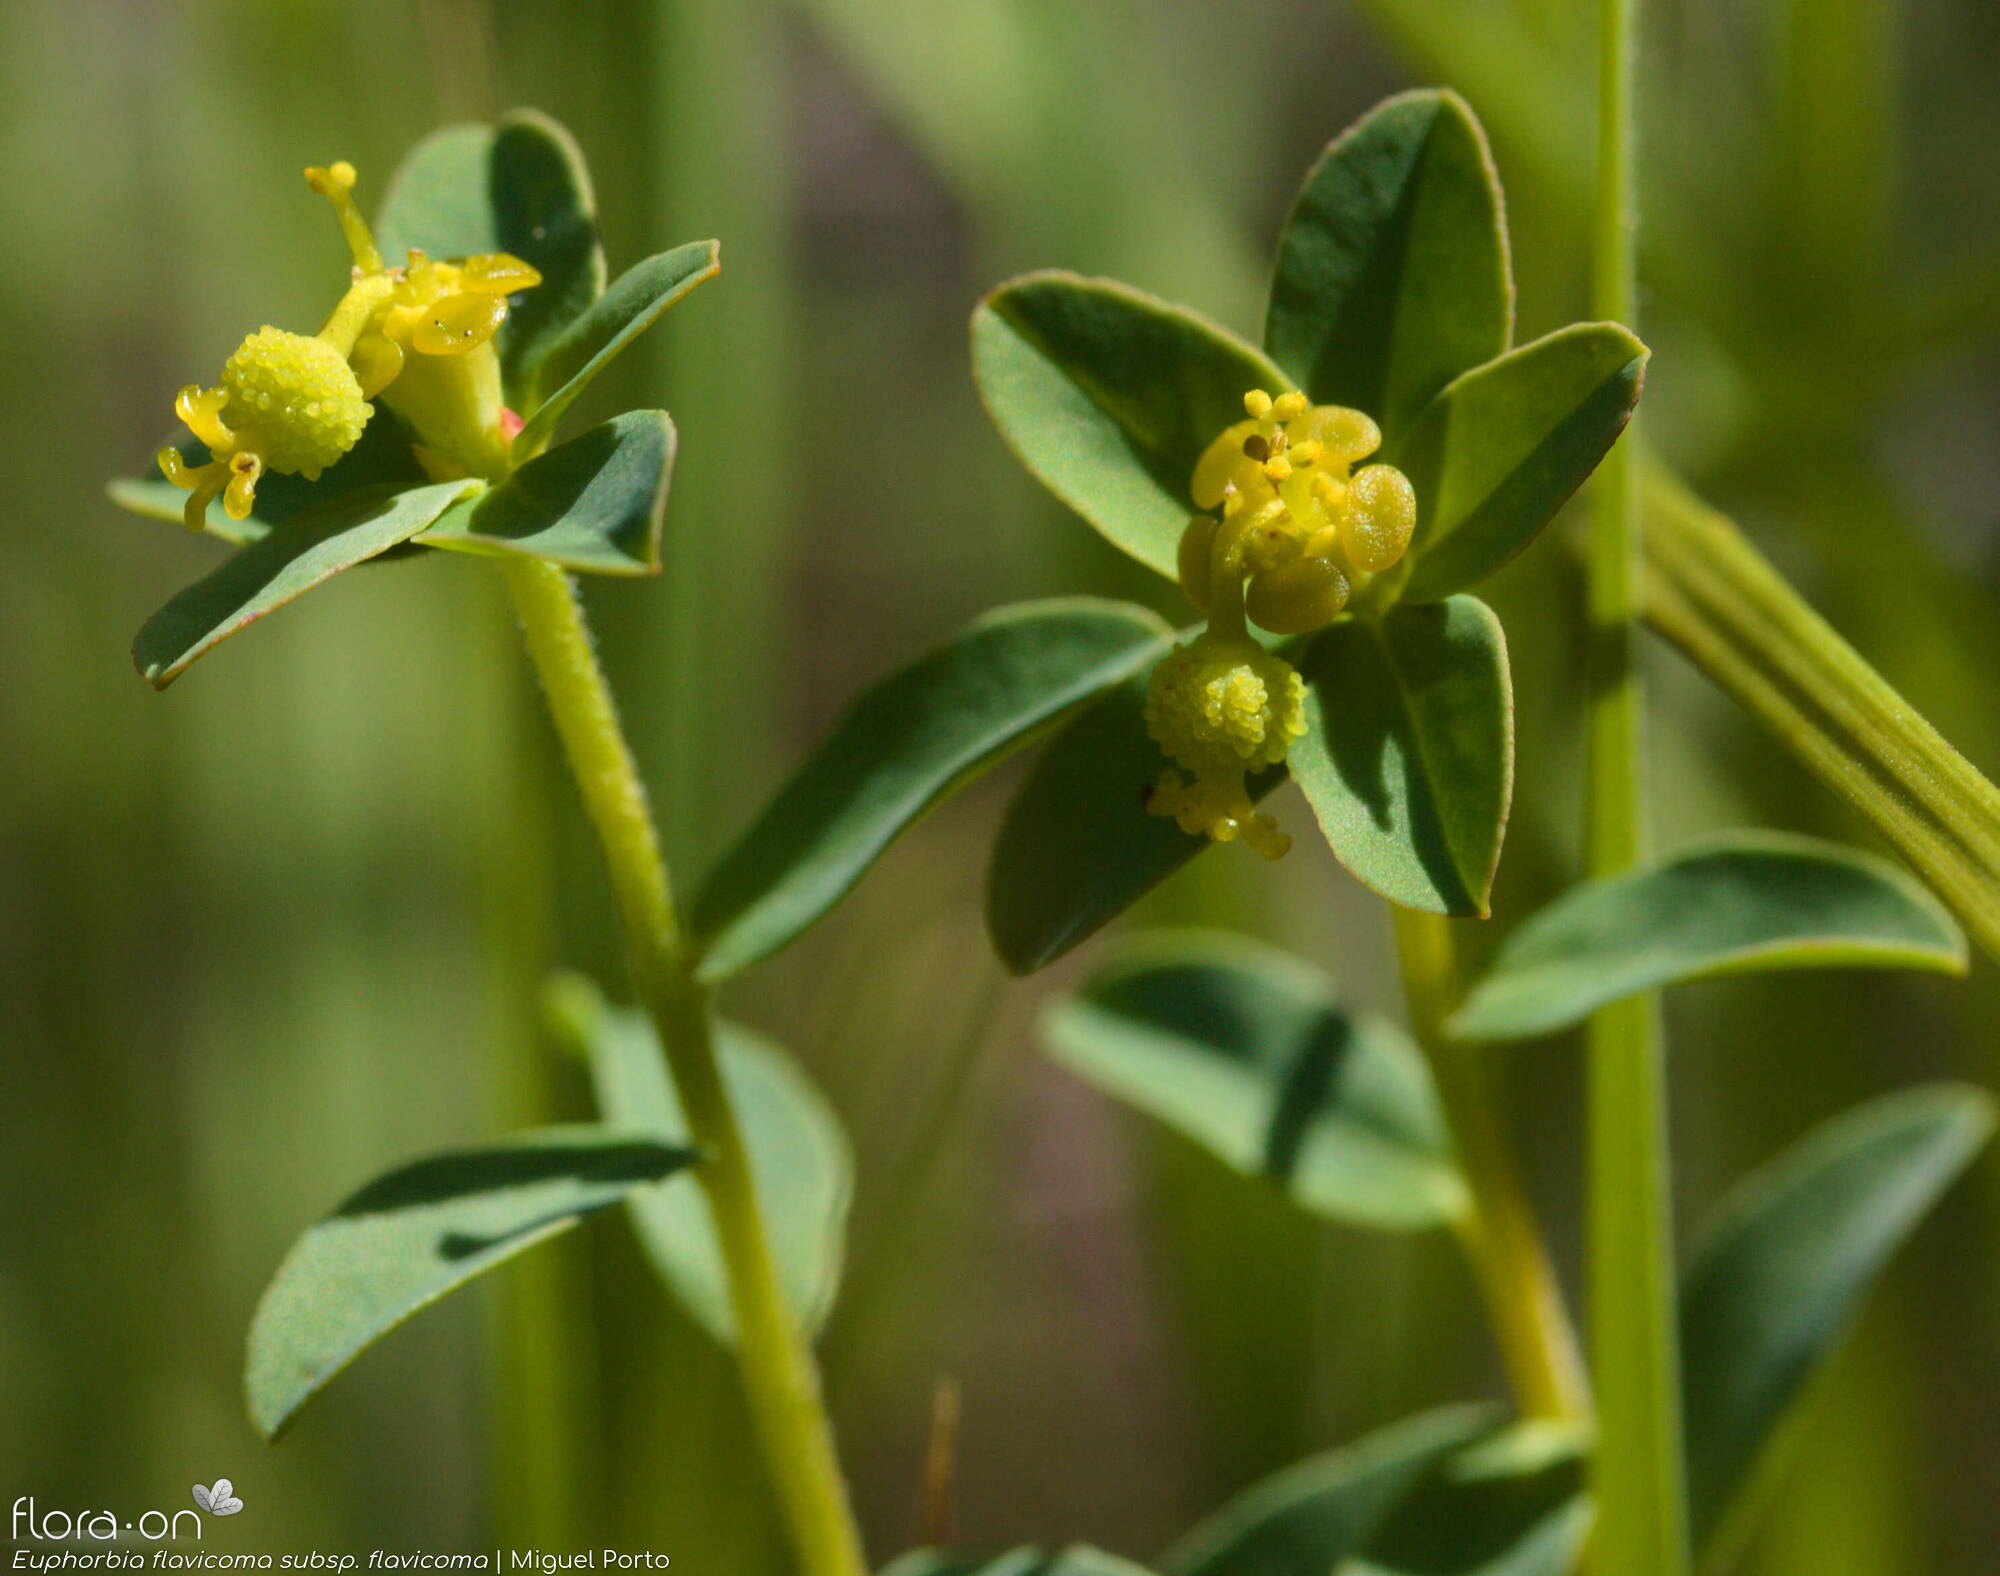 Euphorbia flavicoma flavicoma - Flor (close-up) | Miguel Porto; CC BY-NC 4.0